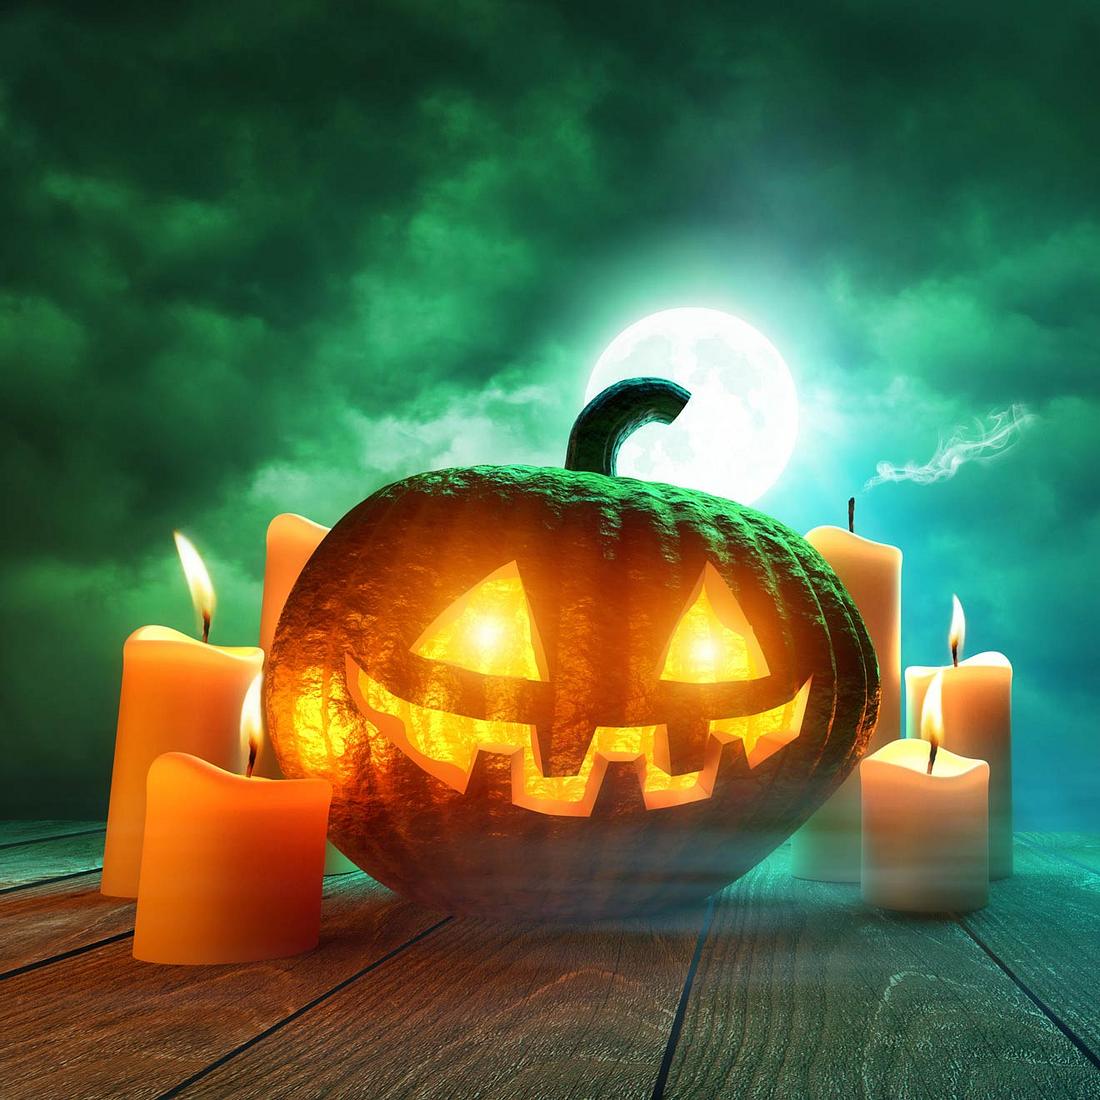 Warum feiern wir eigentlich Halloween? Diese 10 Fakten über Halloween bringen Licht ins Dunkel!